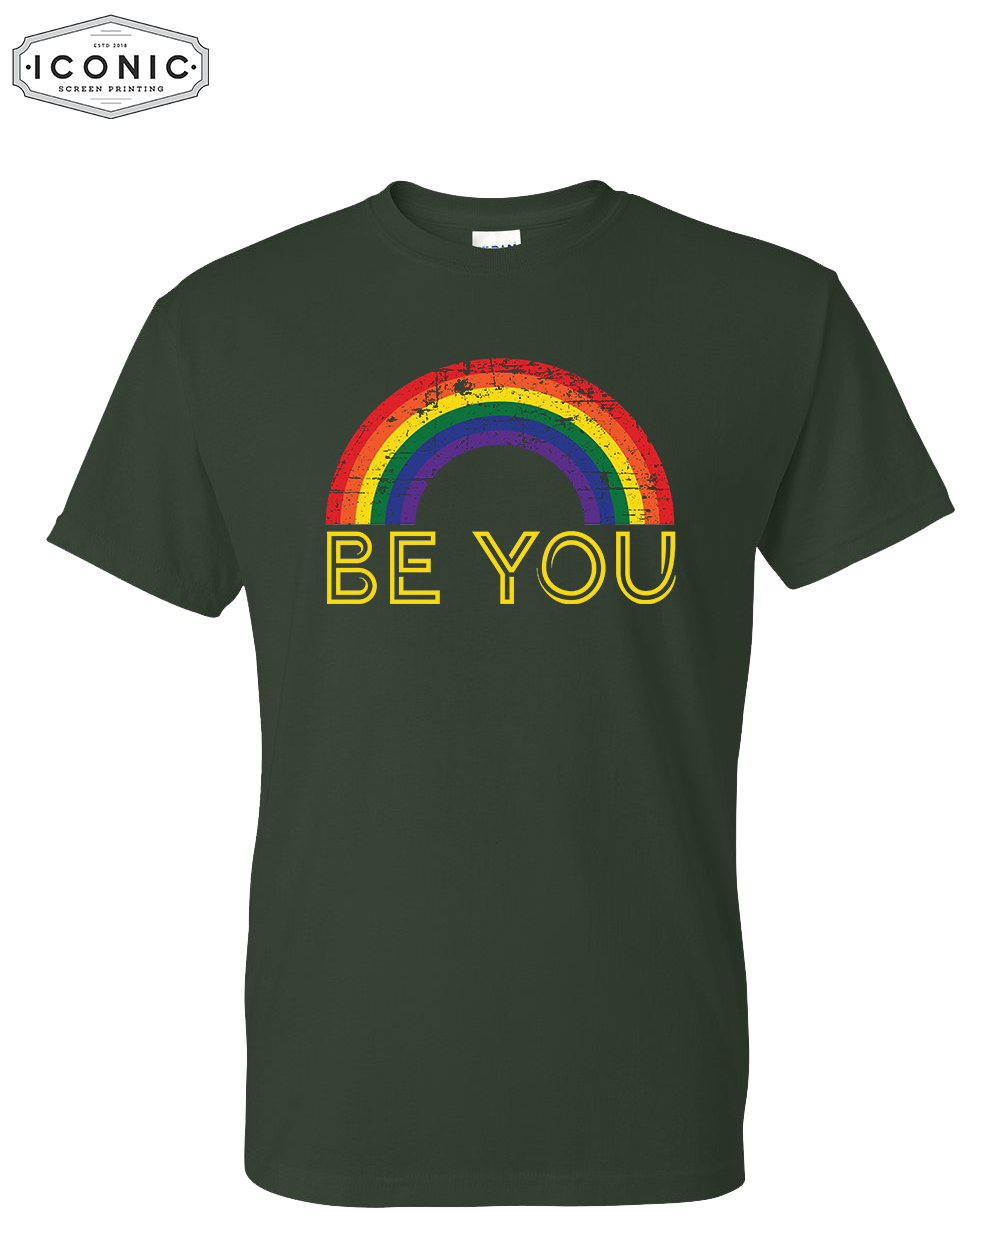 Be You - DryBlend T-shirt